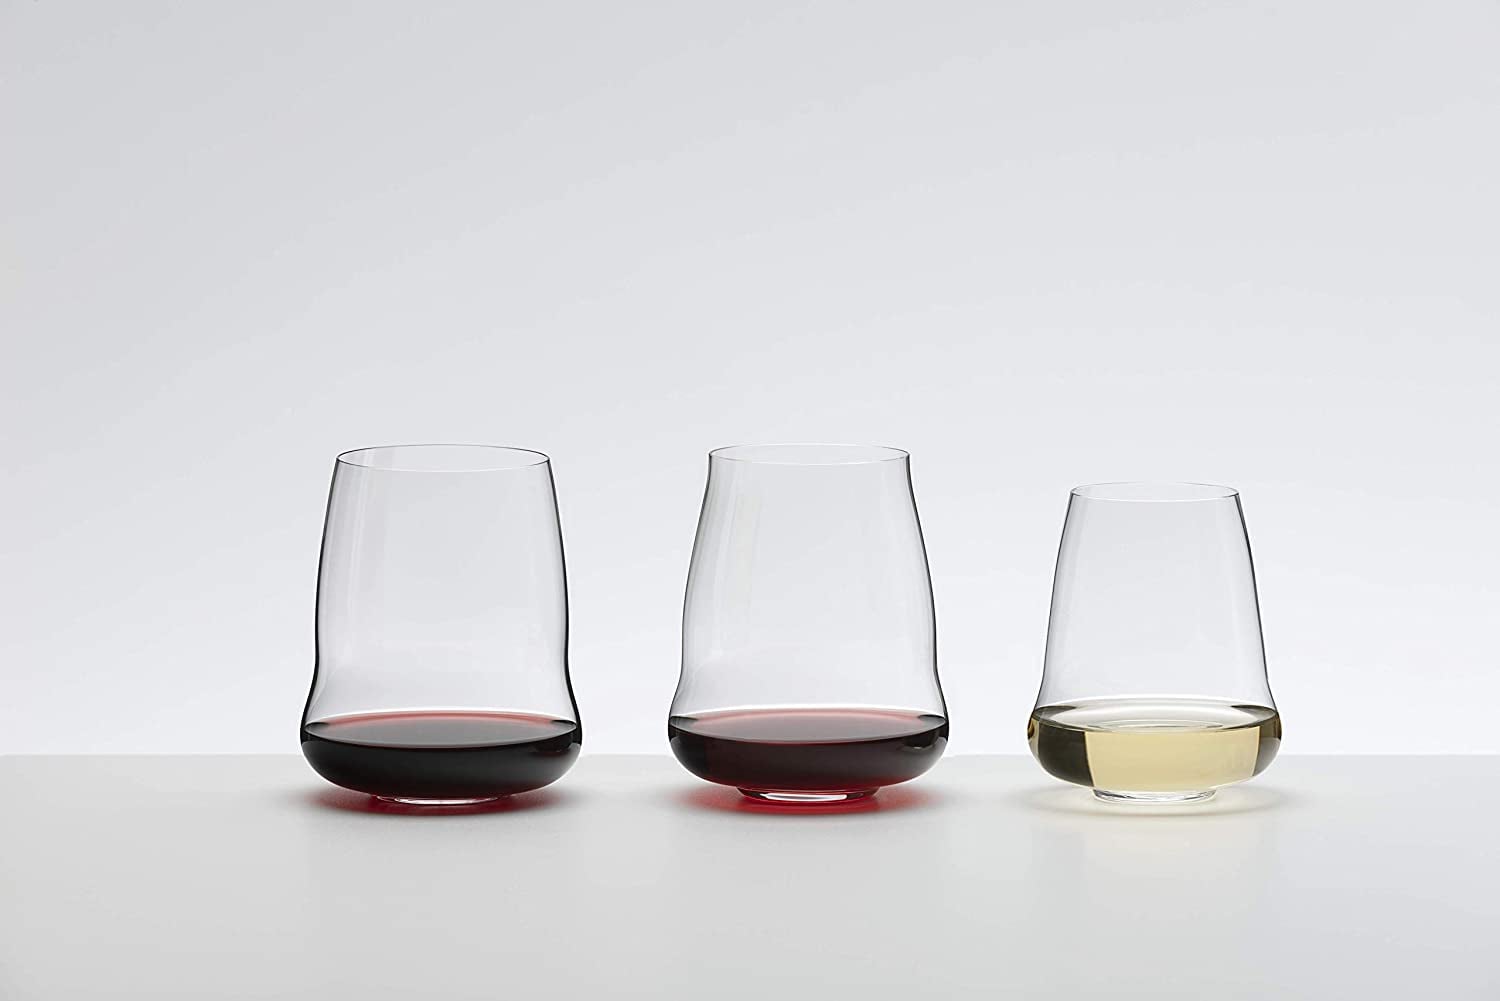 10 unique and unusual wine glasses for 2022